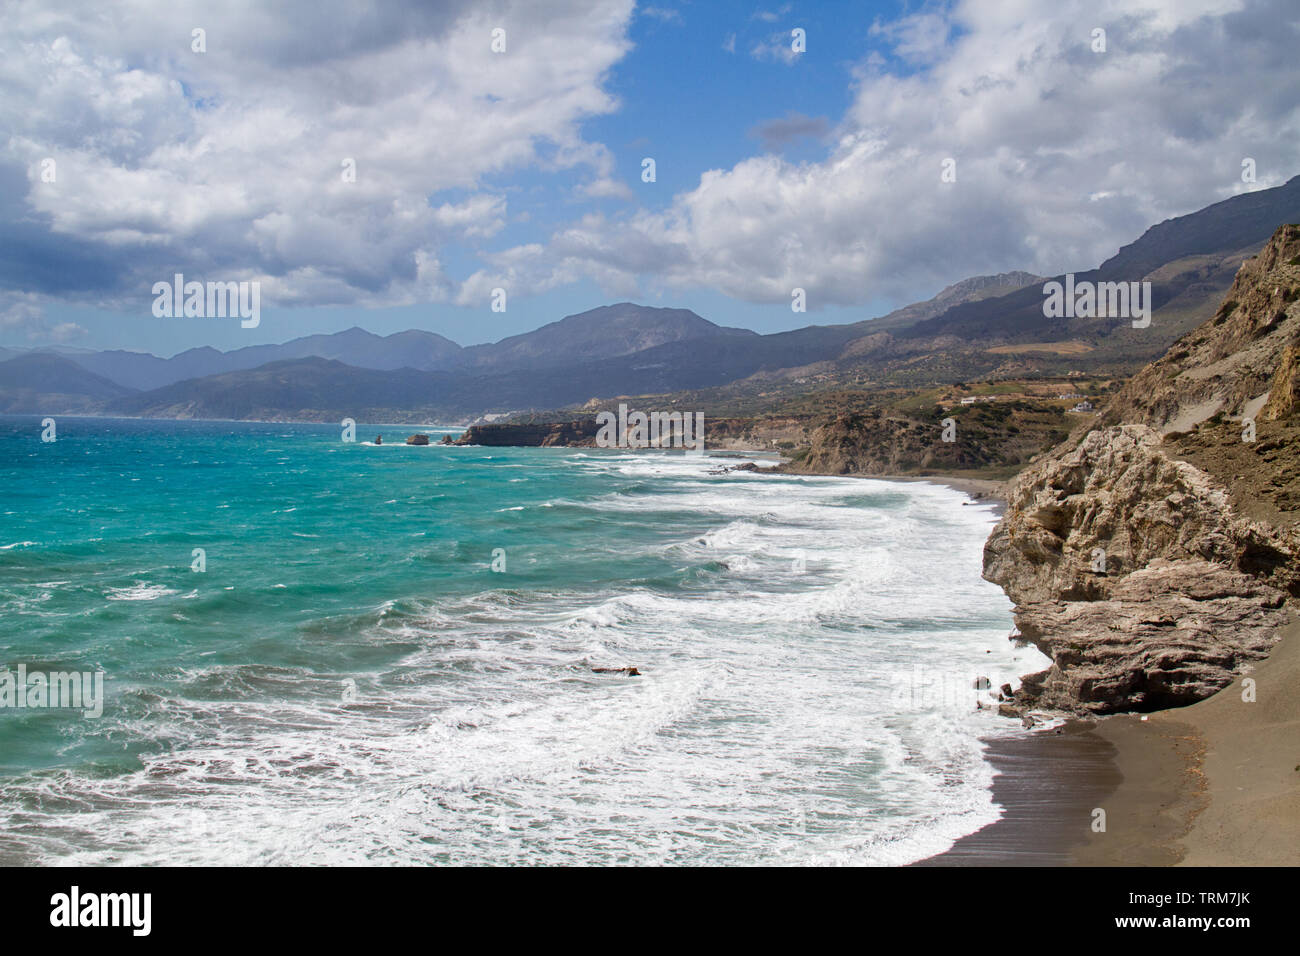 Costa del sud di Creta nei pressi di Aghios Pavlos, breakers laminazione su verde blu del mare Mediterraneo Foto Stock